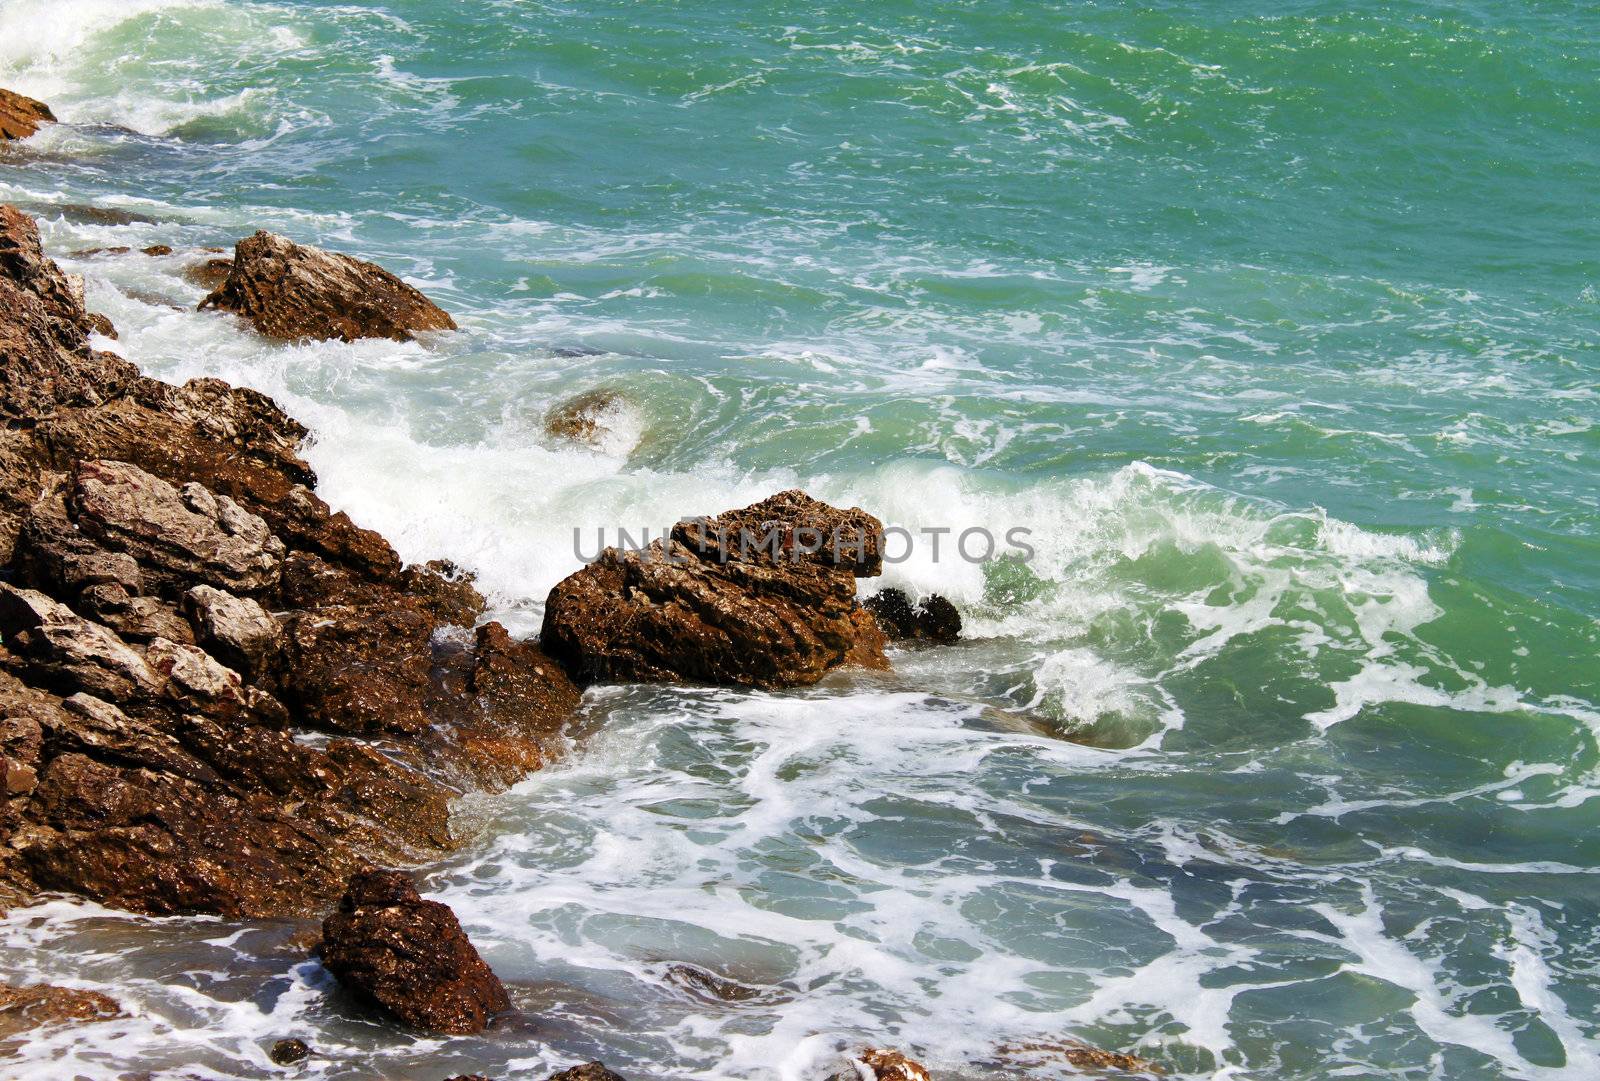 Sea stones splash wave by geargodz